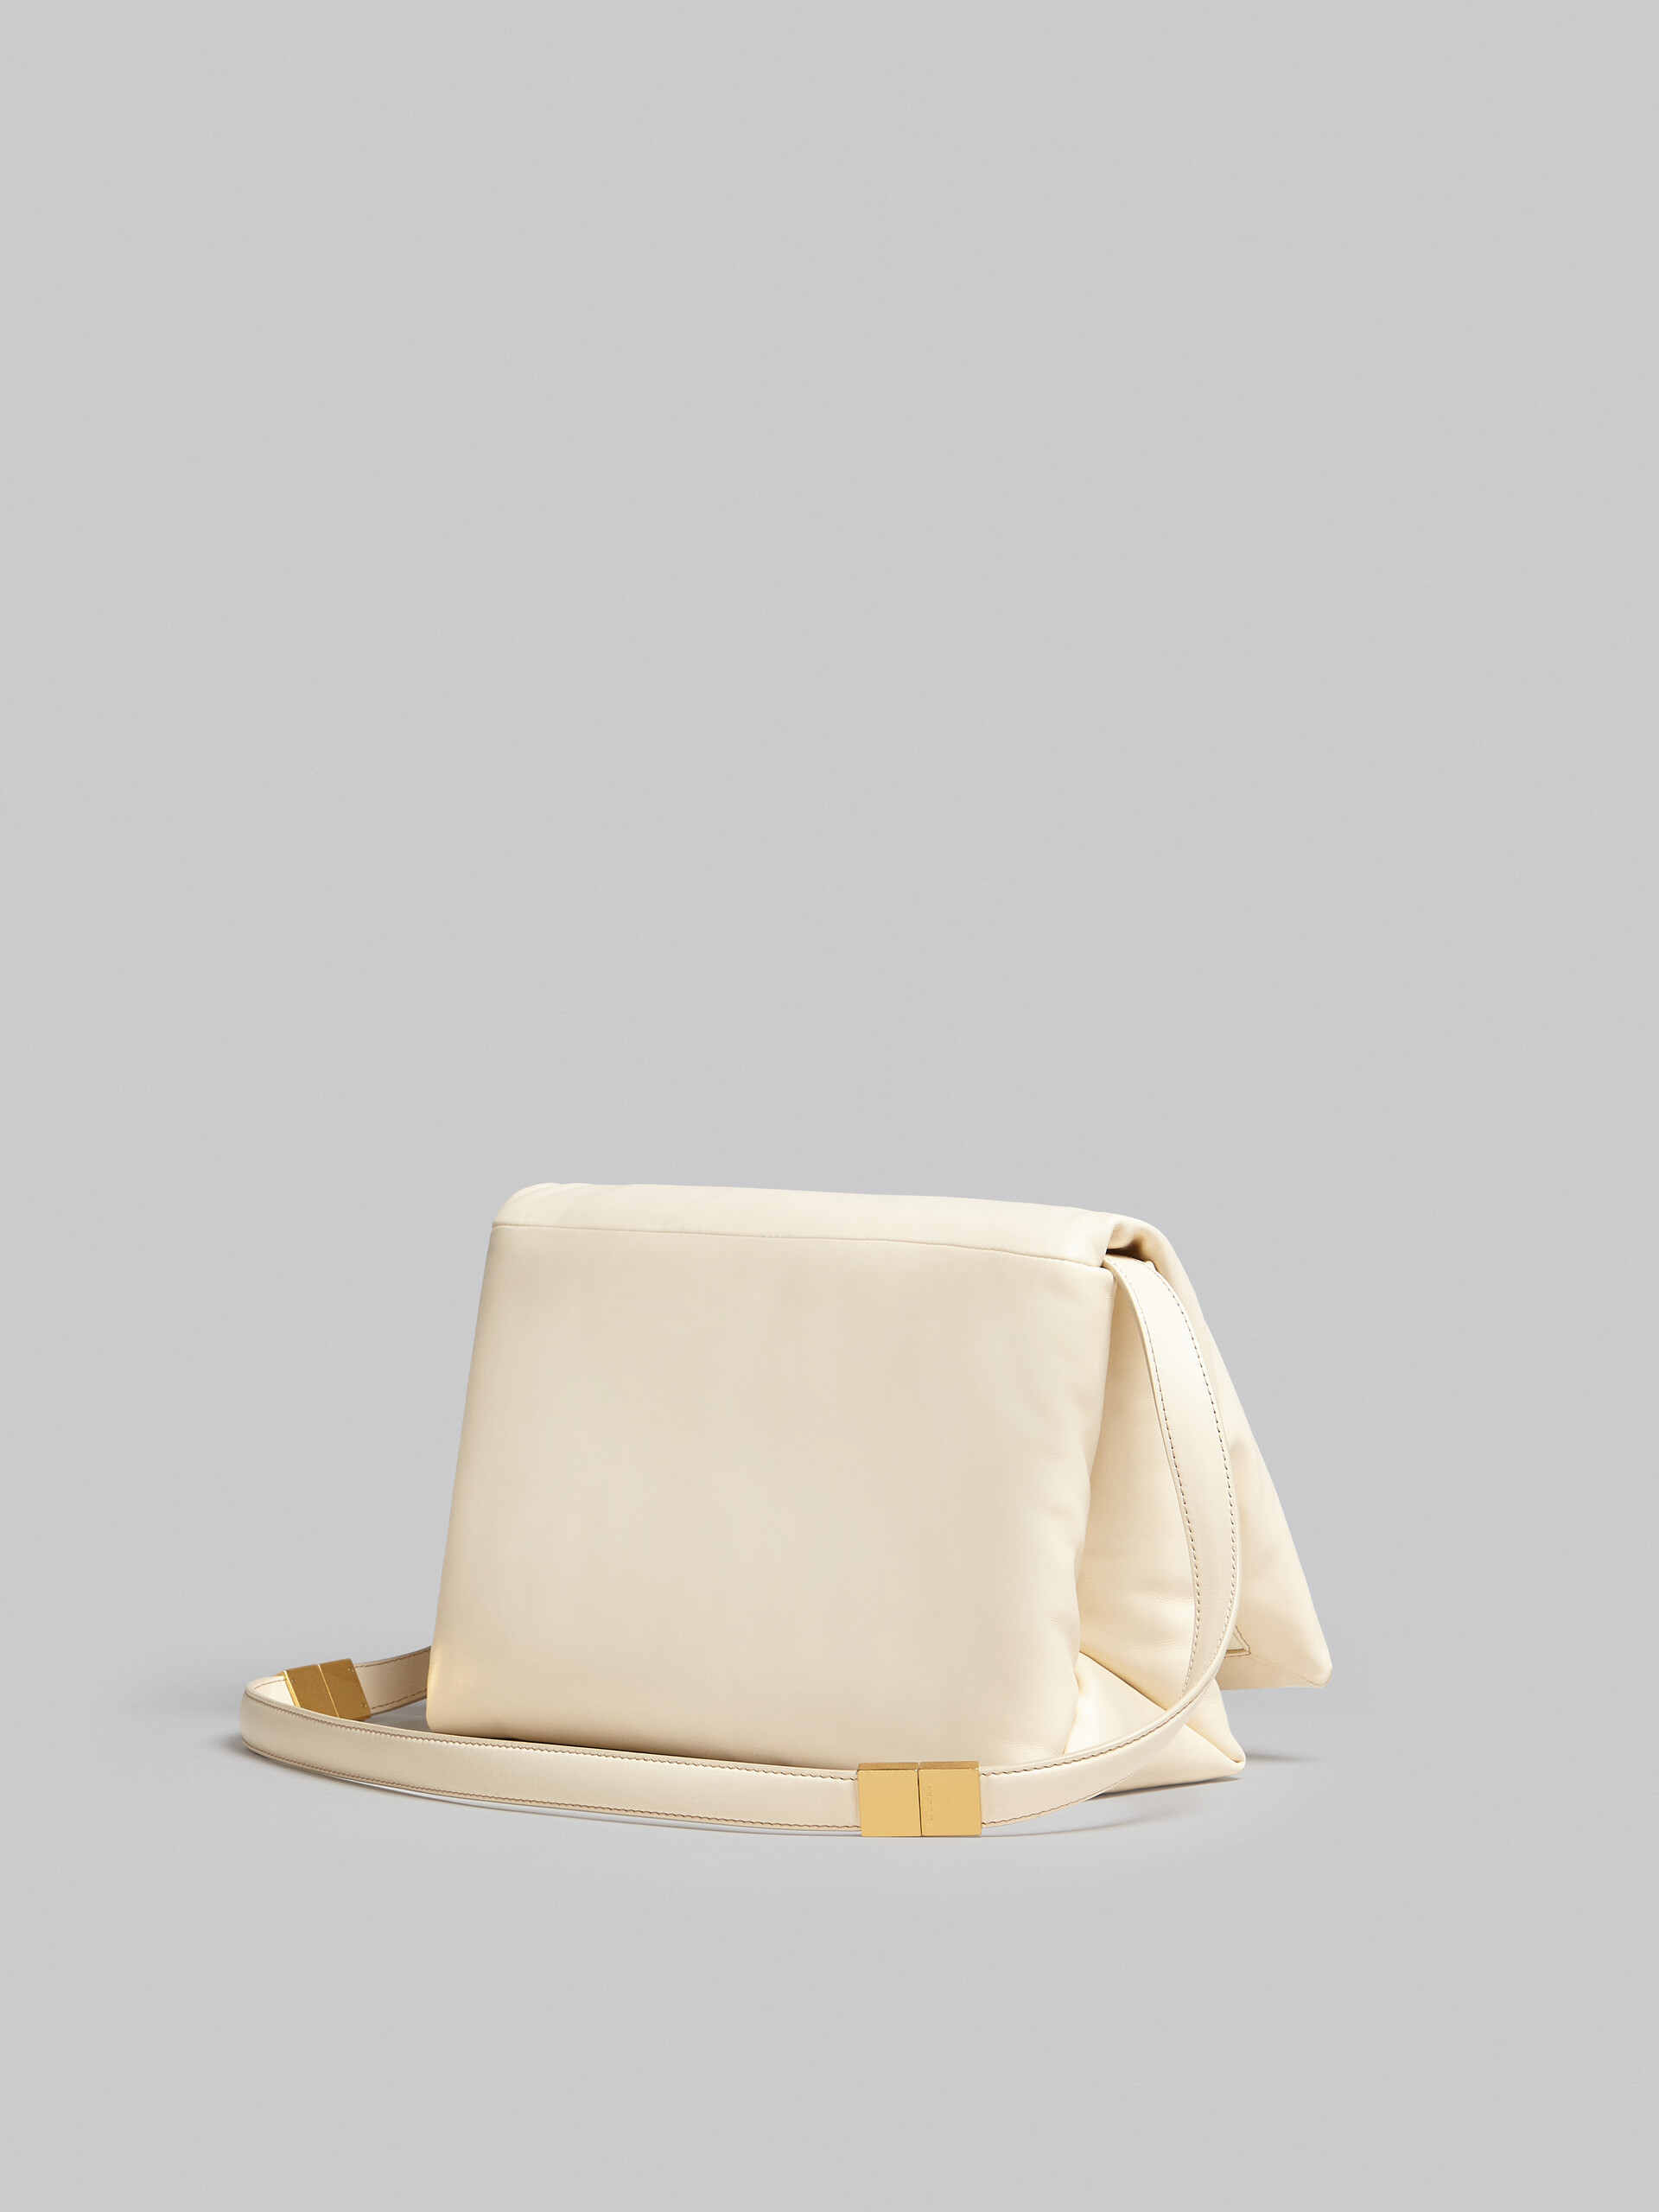 Large white calsfkin Prisma bag - Shoulder Bag - Image 3